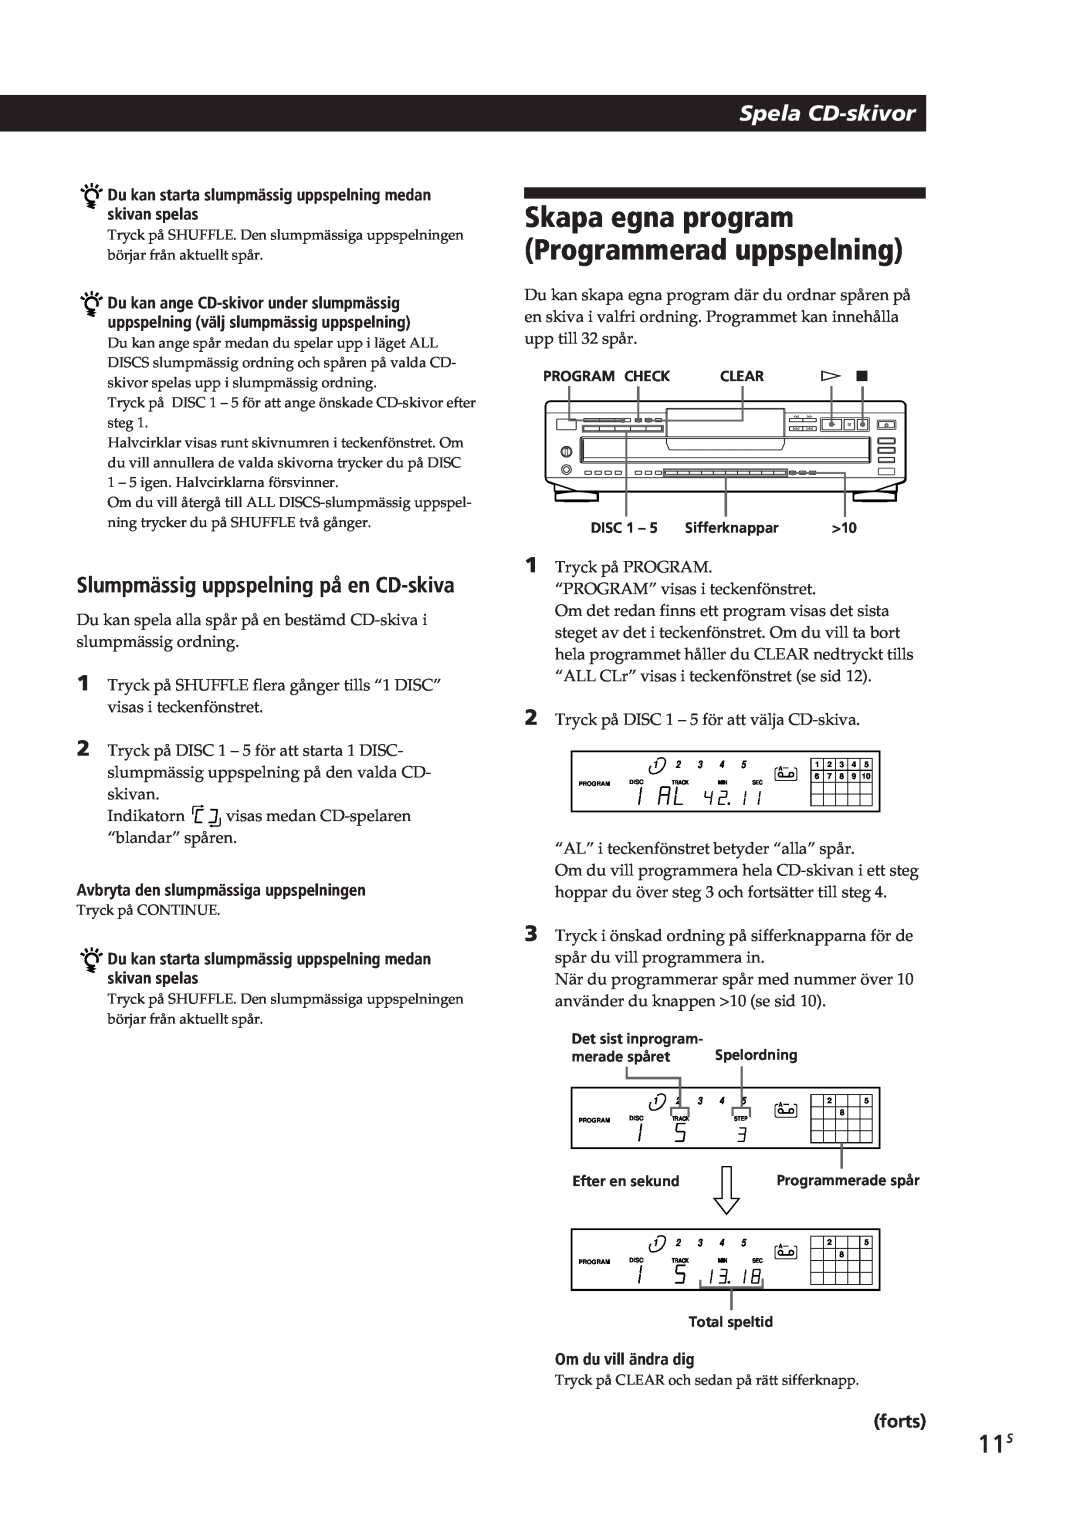 Sony CDP-CE505 manual Skapa egna program Programmerad uppspelning, Slumpmässig uppspelning på en CD-skiva, Spela CD-skivor 